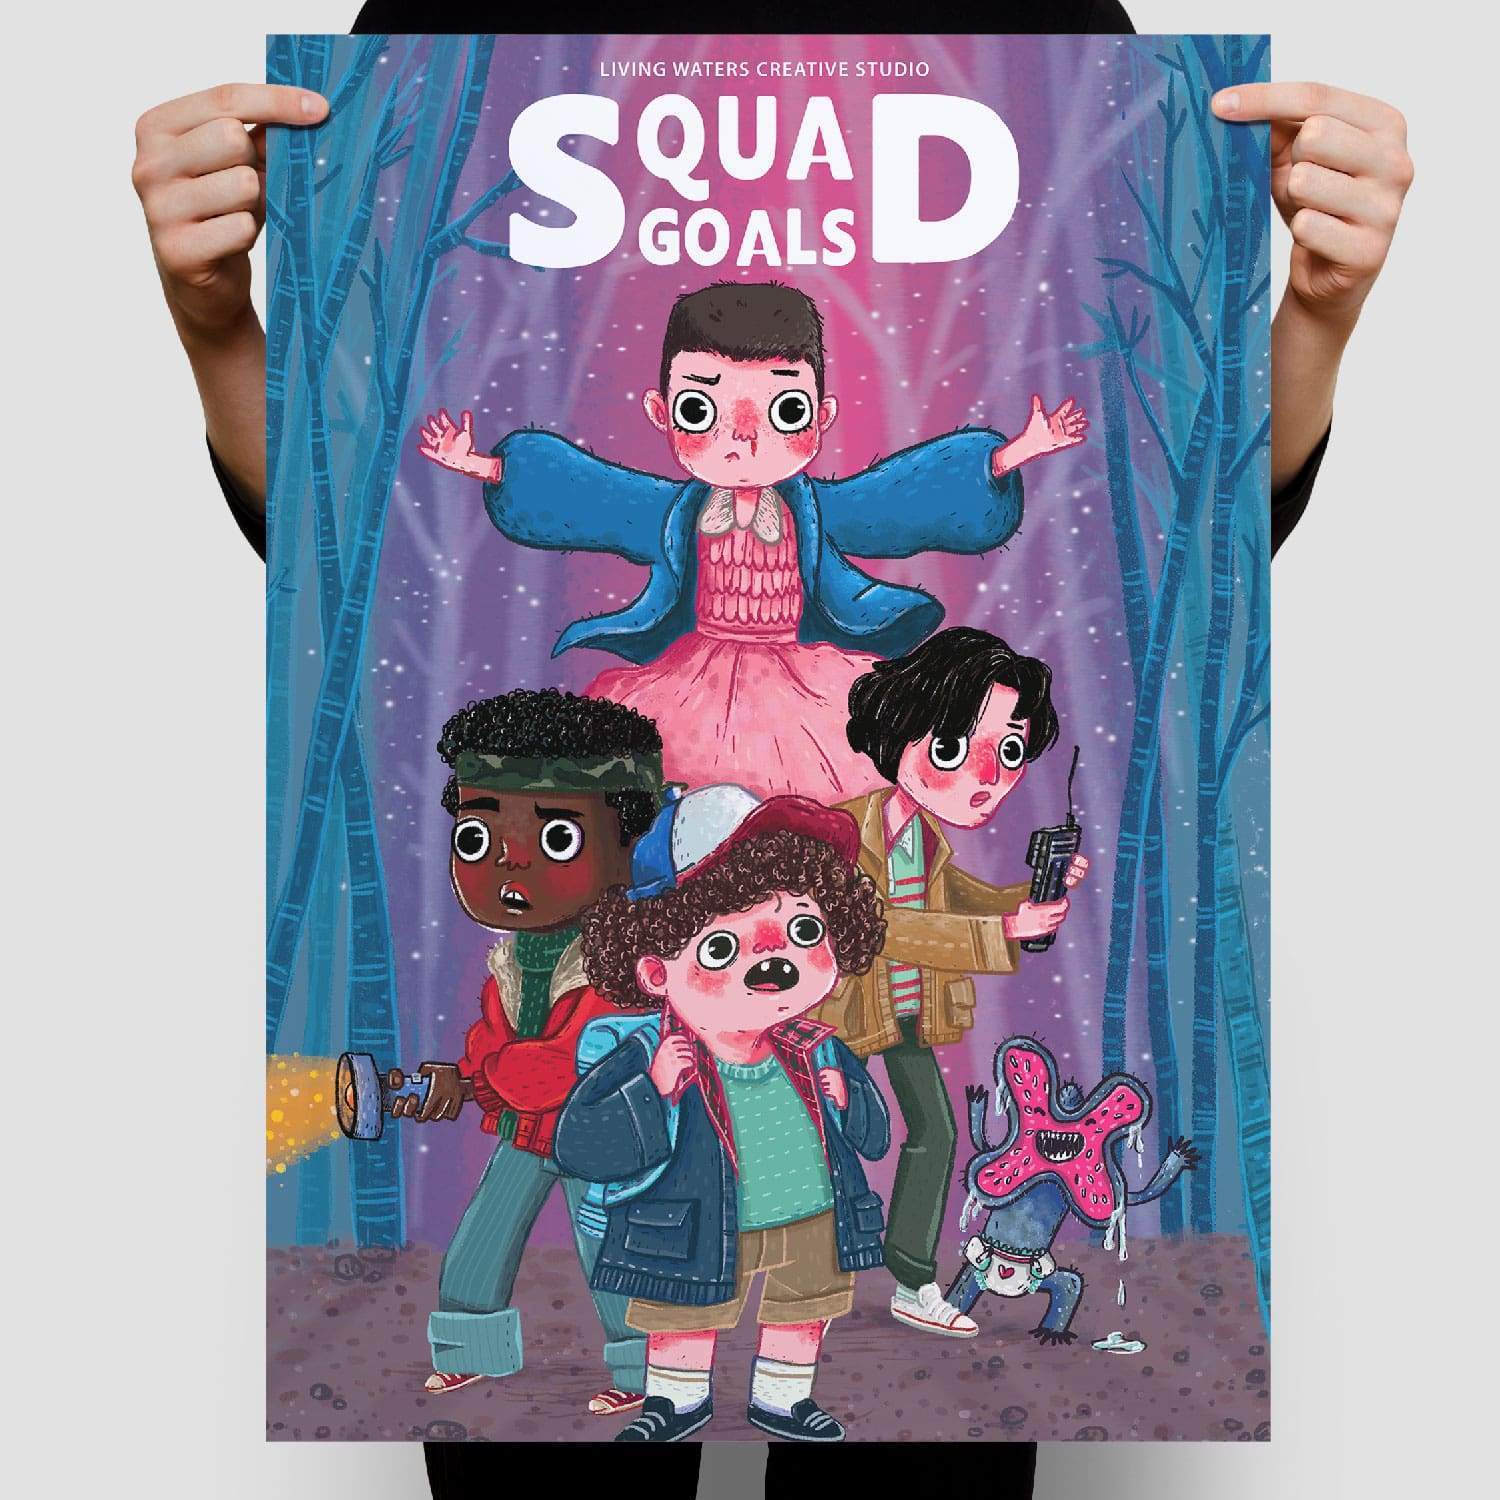 The Big Squad Goals Poster